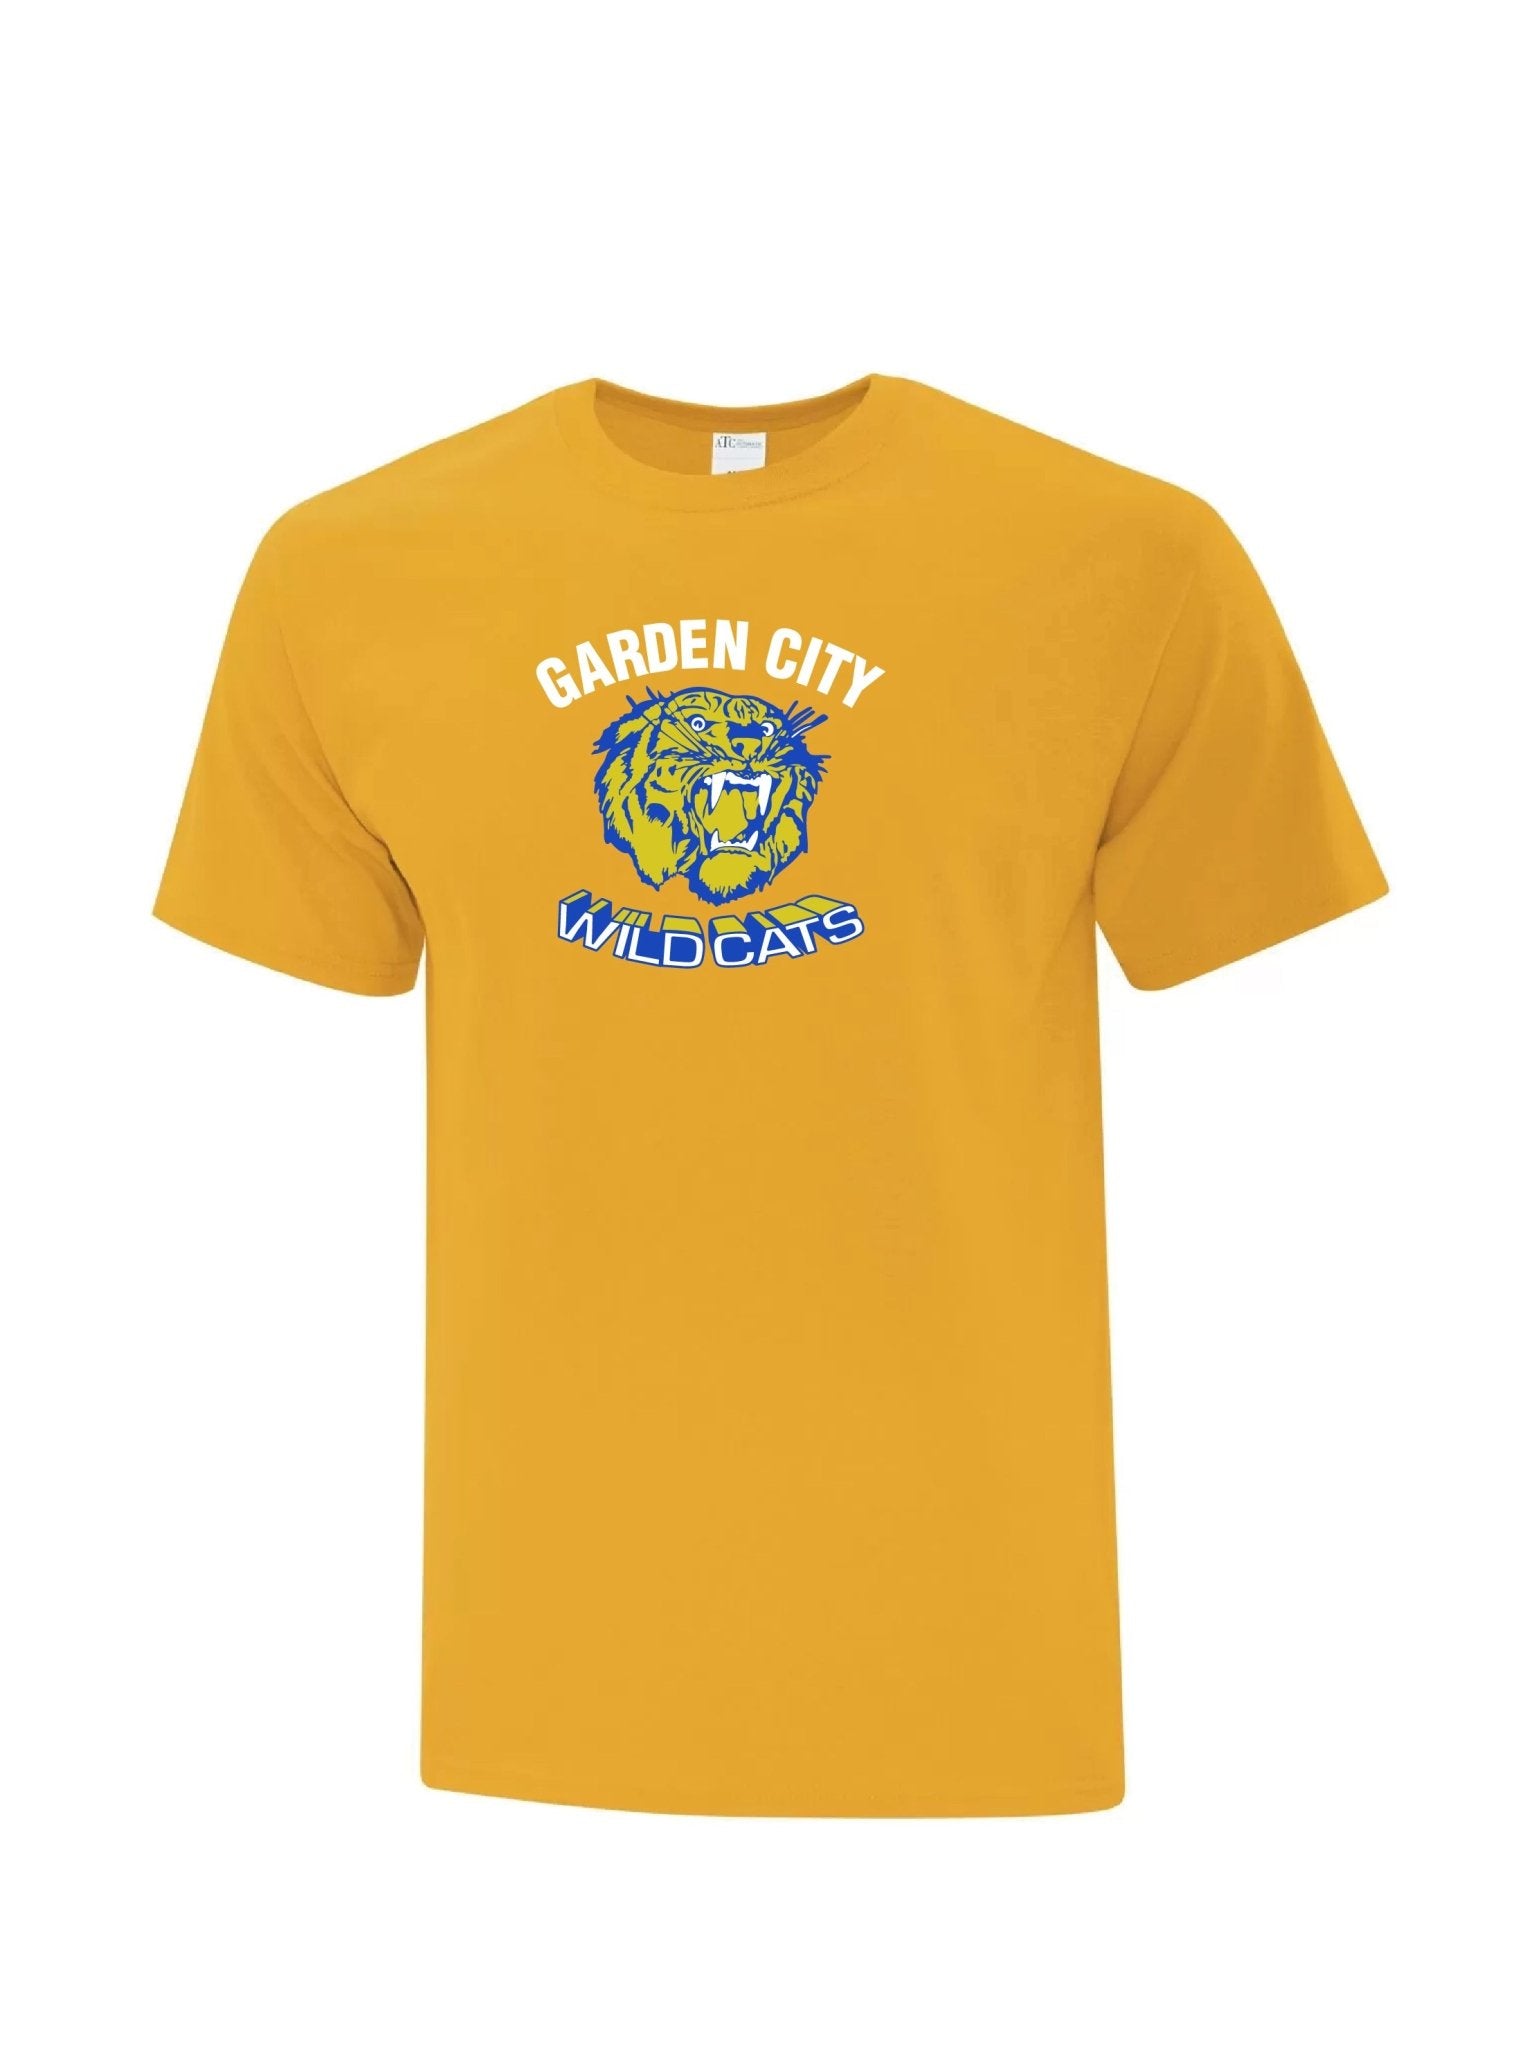 Youth Garden City Wildcats T-shirt - Oddball Workshop